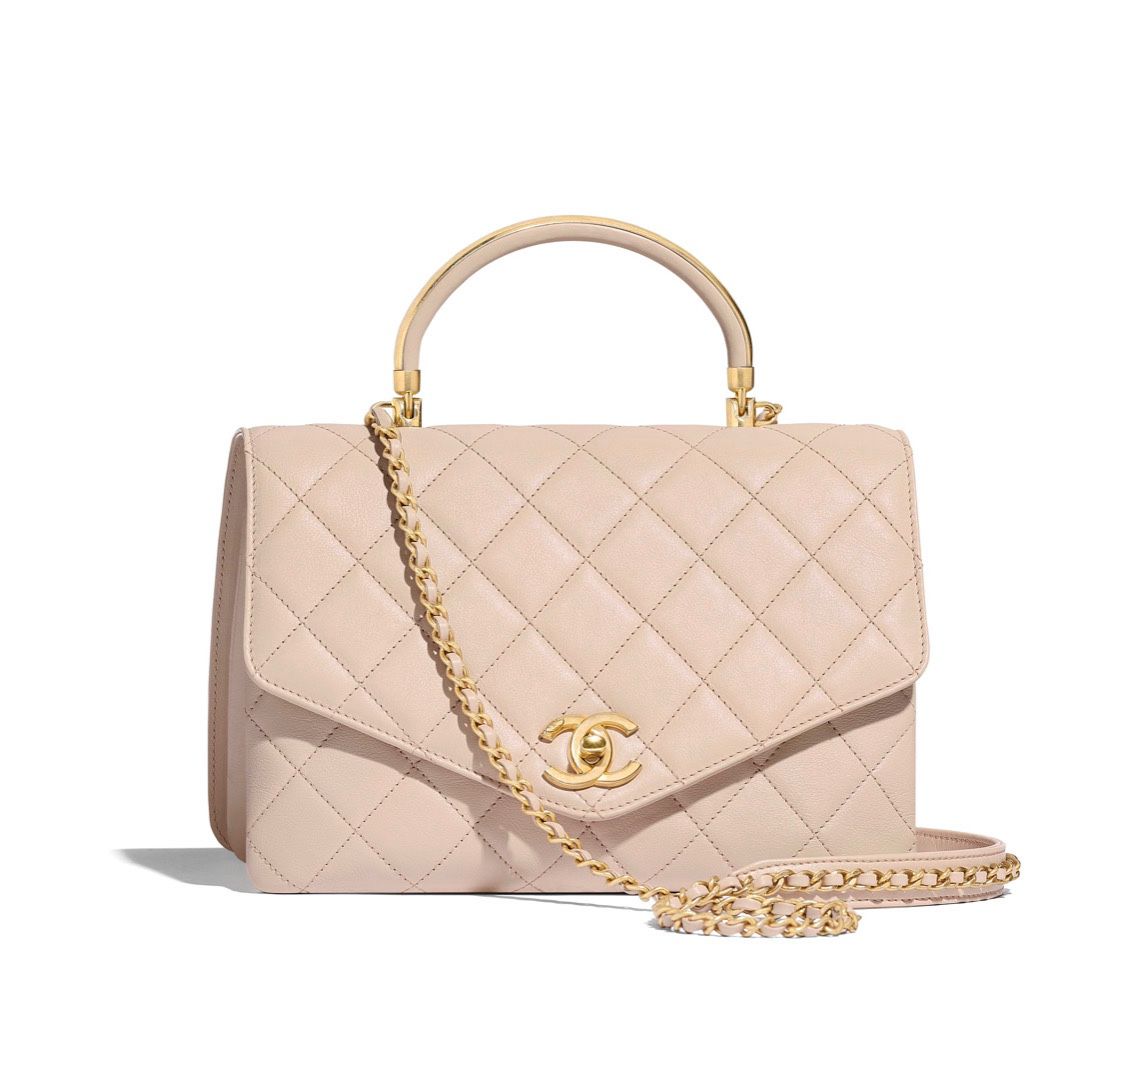 100% Authentic Chanel Flap Bag